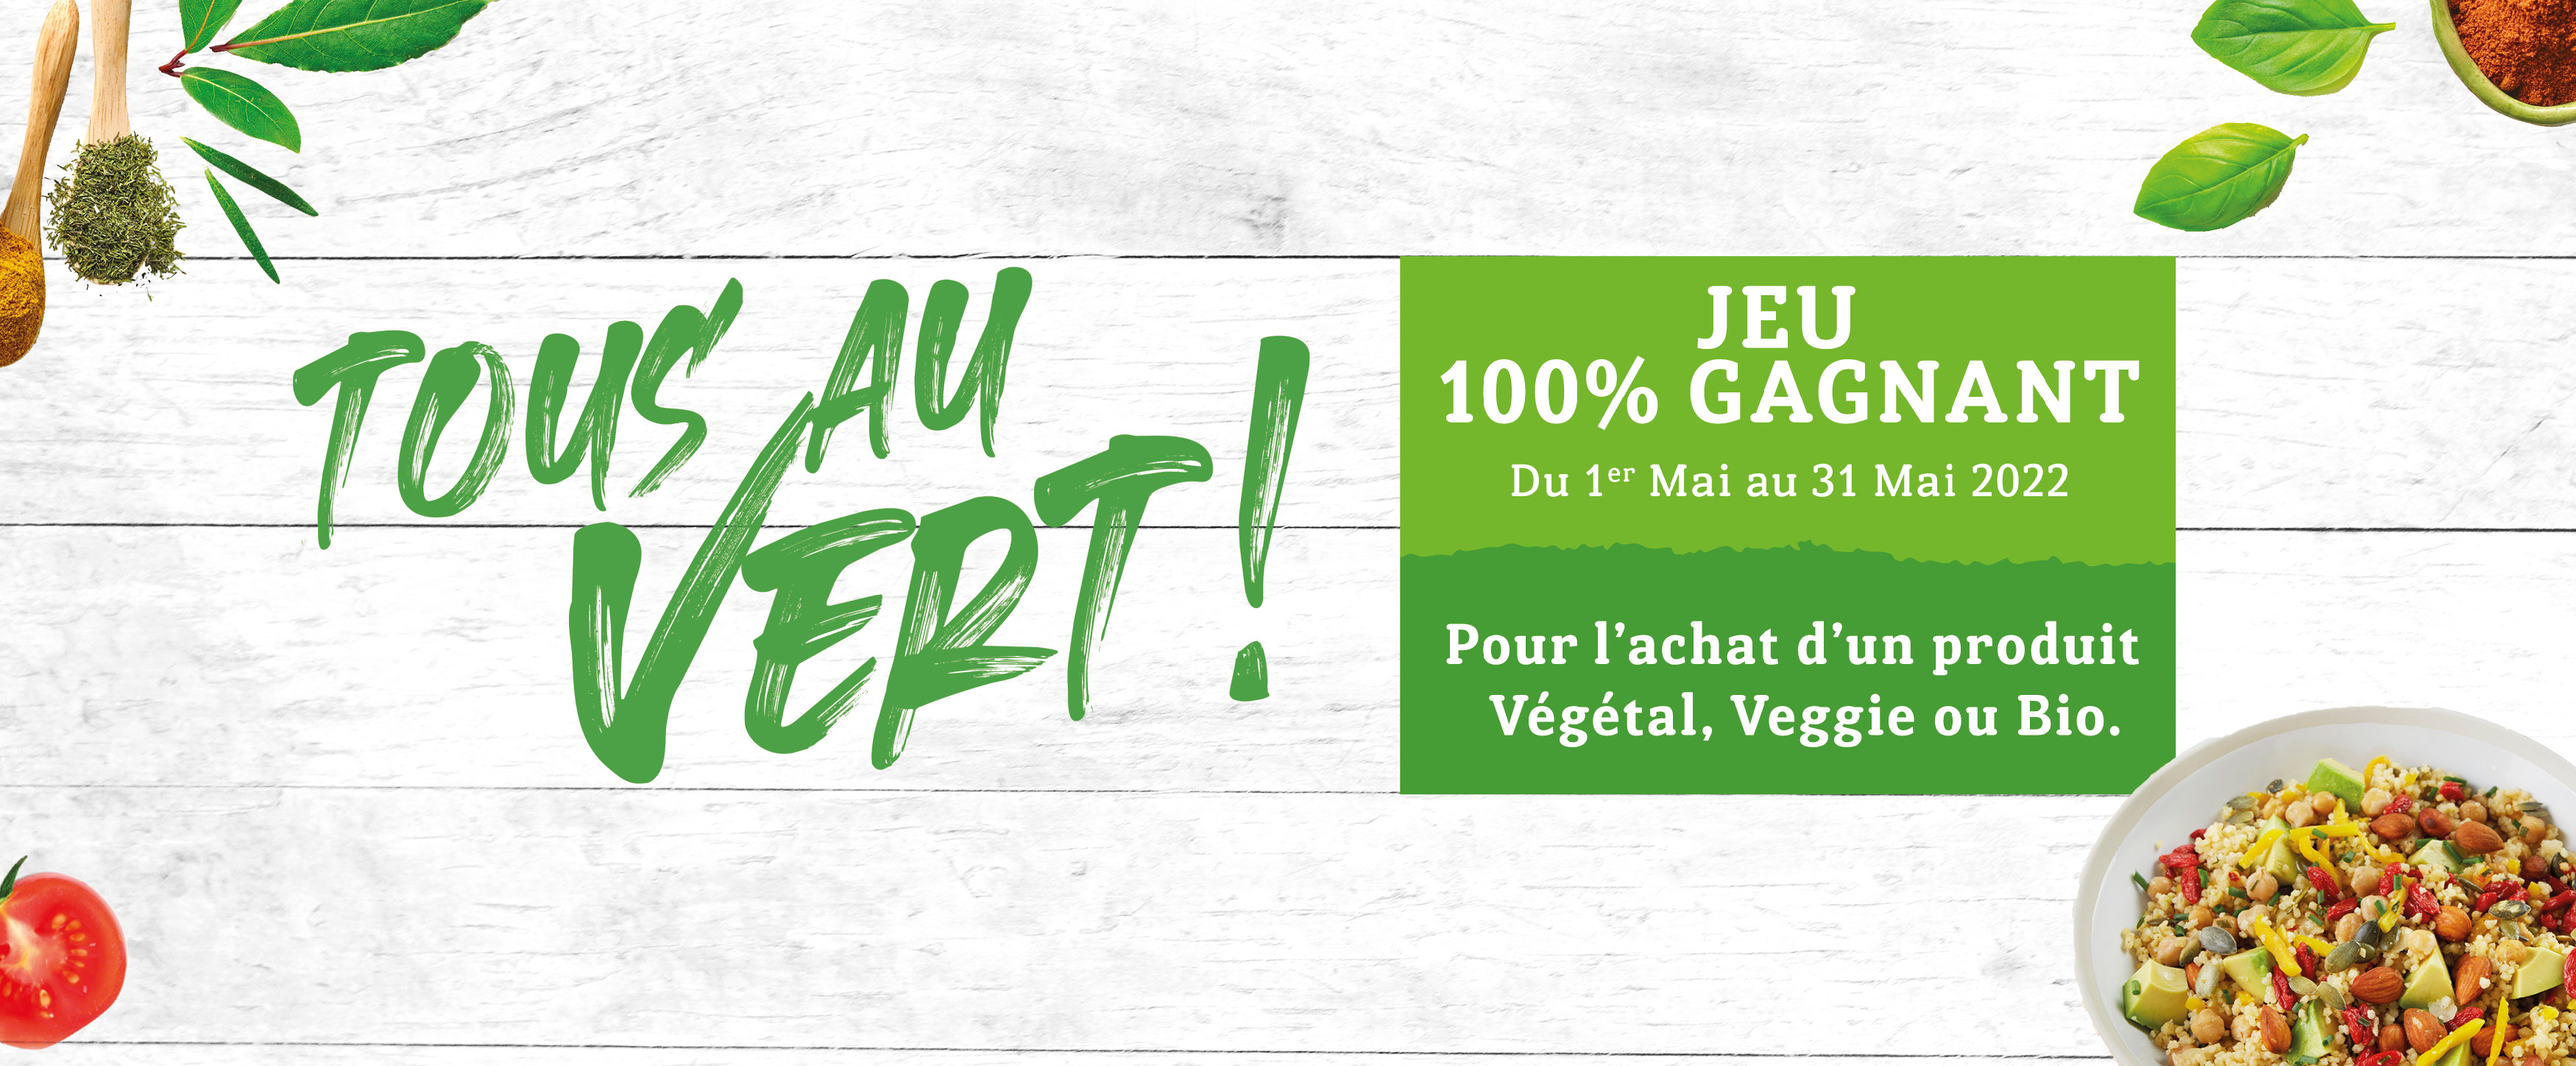 Tous au vert - Jeu 100% gagnant - Pour l'achat d'un produit Végétal, Veggie ou Bio - Du 1er Mai au 31 Mai 2022